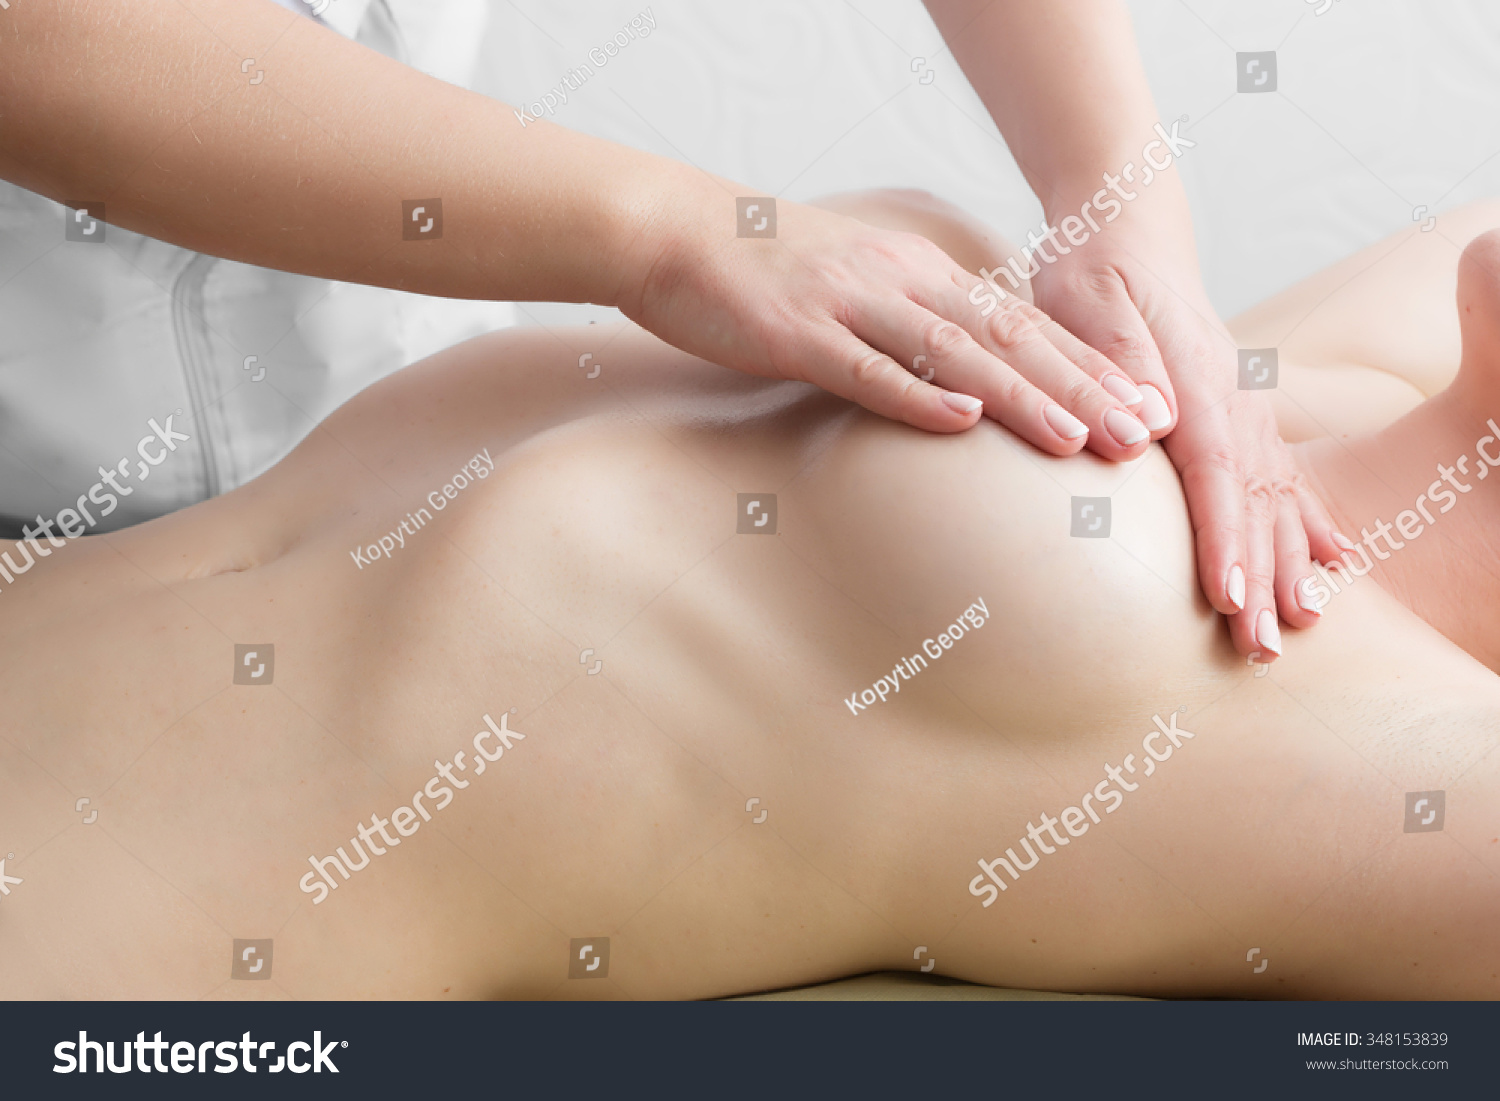 эротический массаж груди для женщин фото 81